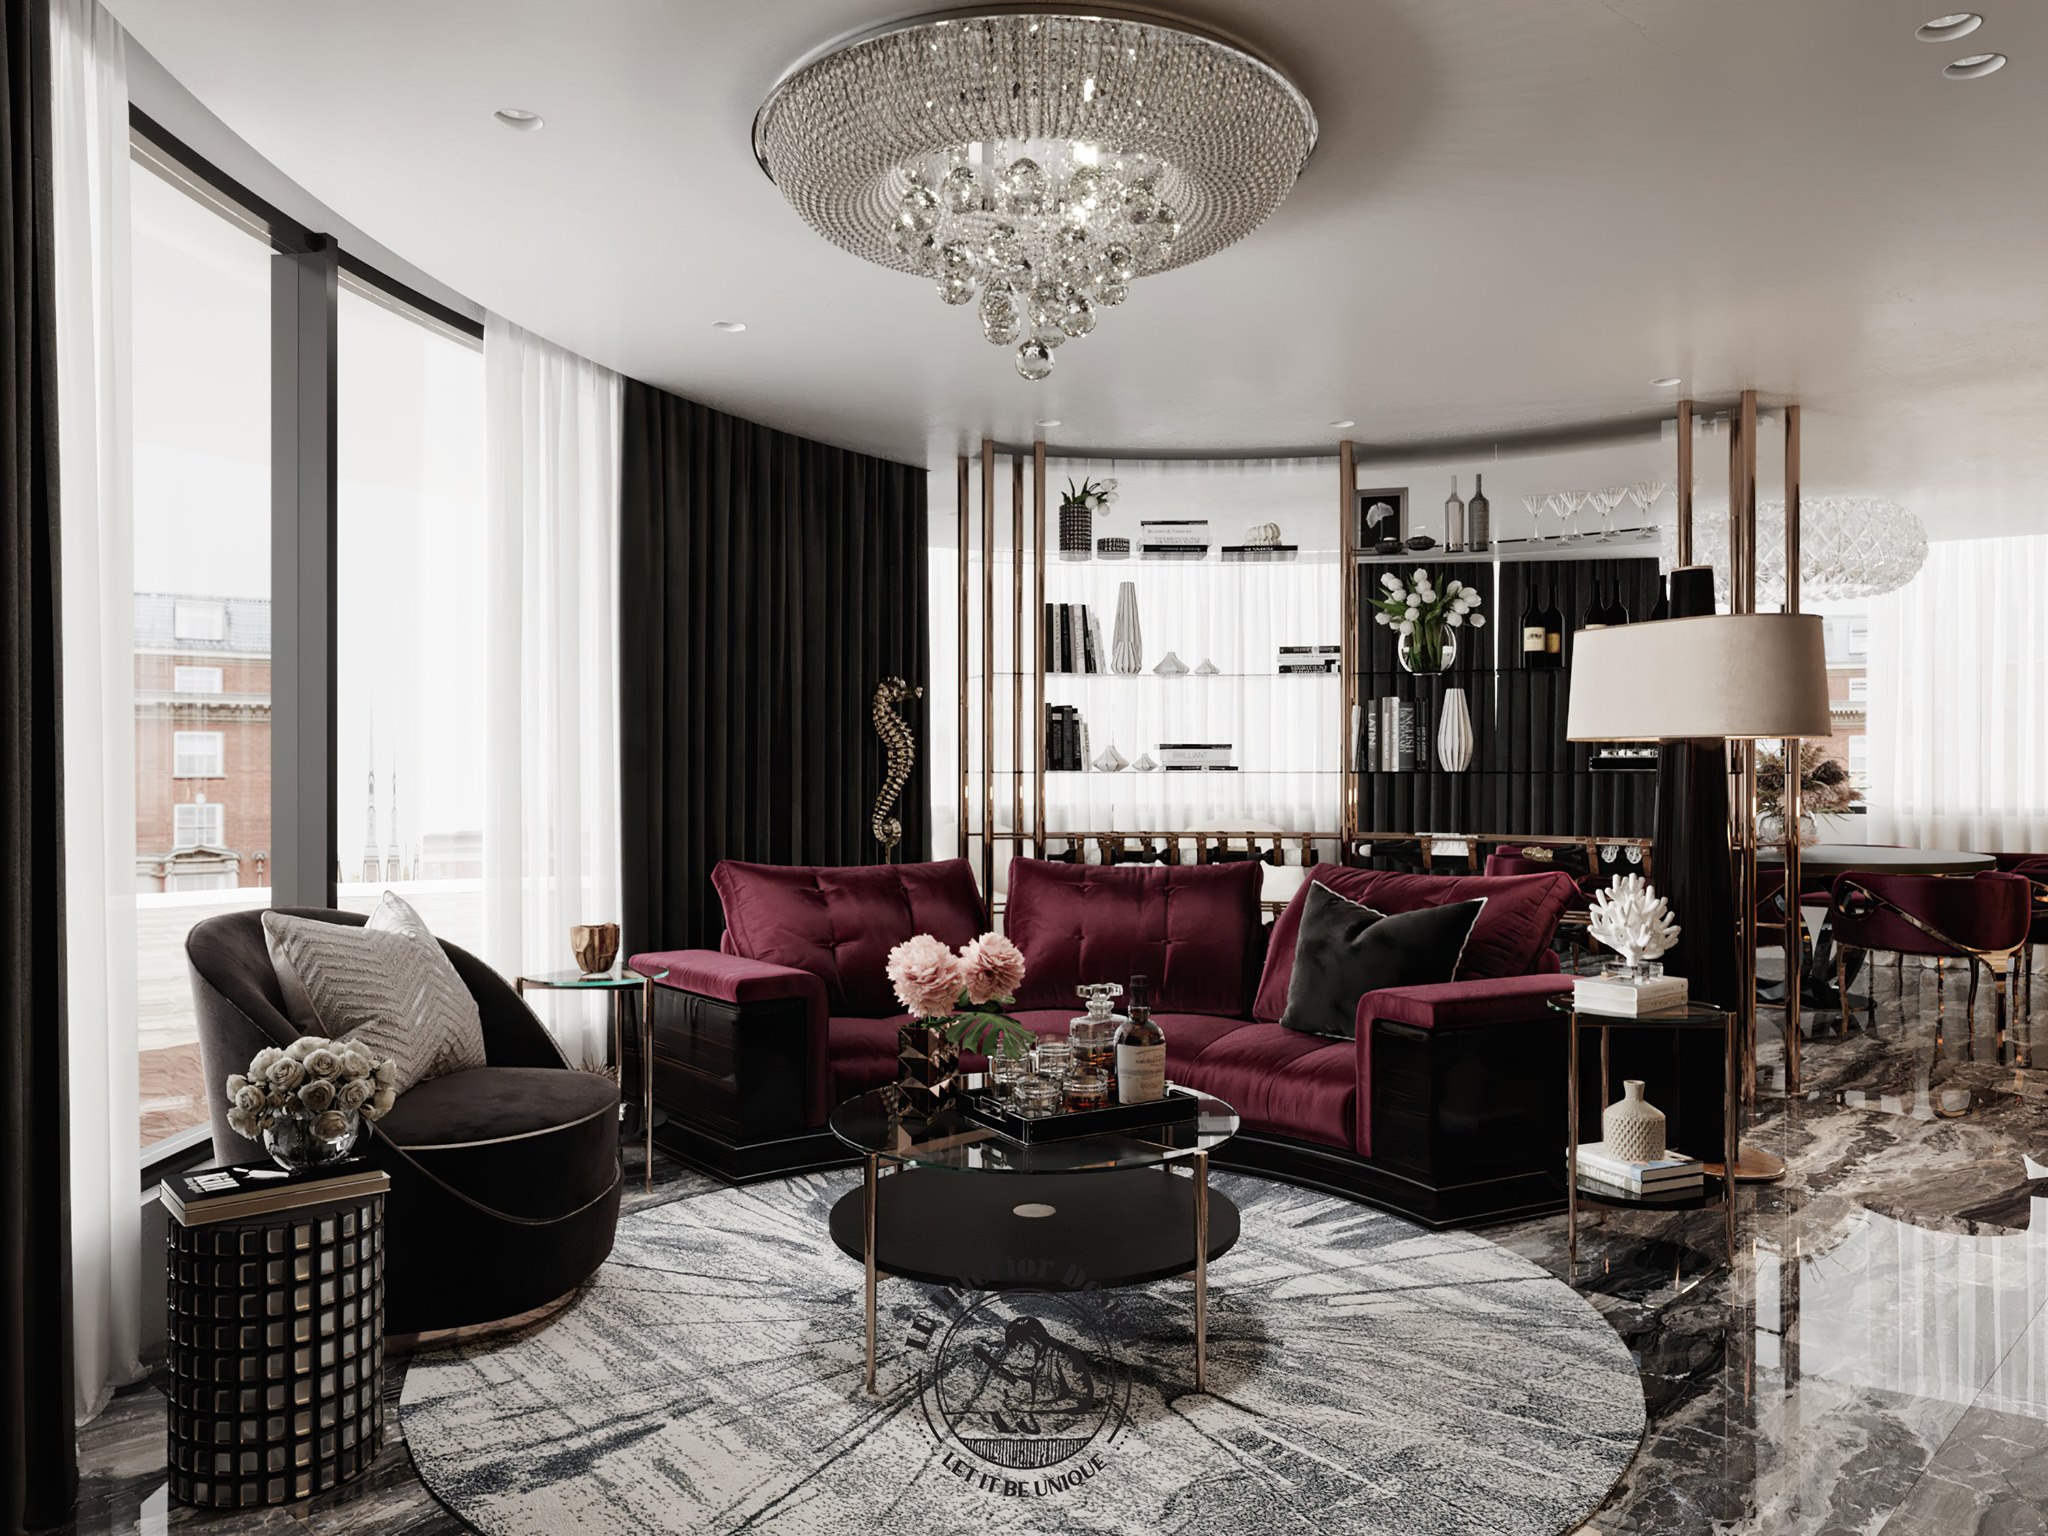 Lập kế hoạch cho không gian chính là tiền đề trong việc lựa chọn nội thất trang trí phòng khách | Dự án Penthouse Vũng Tàu - LU Design thực hiện.